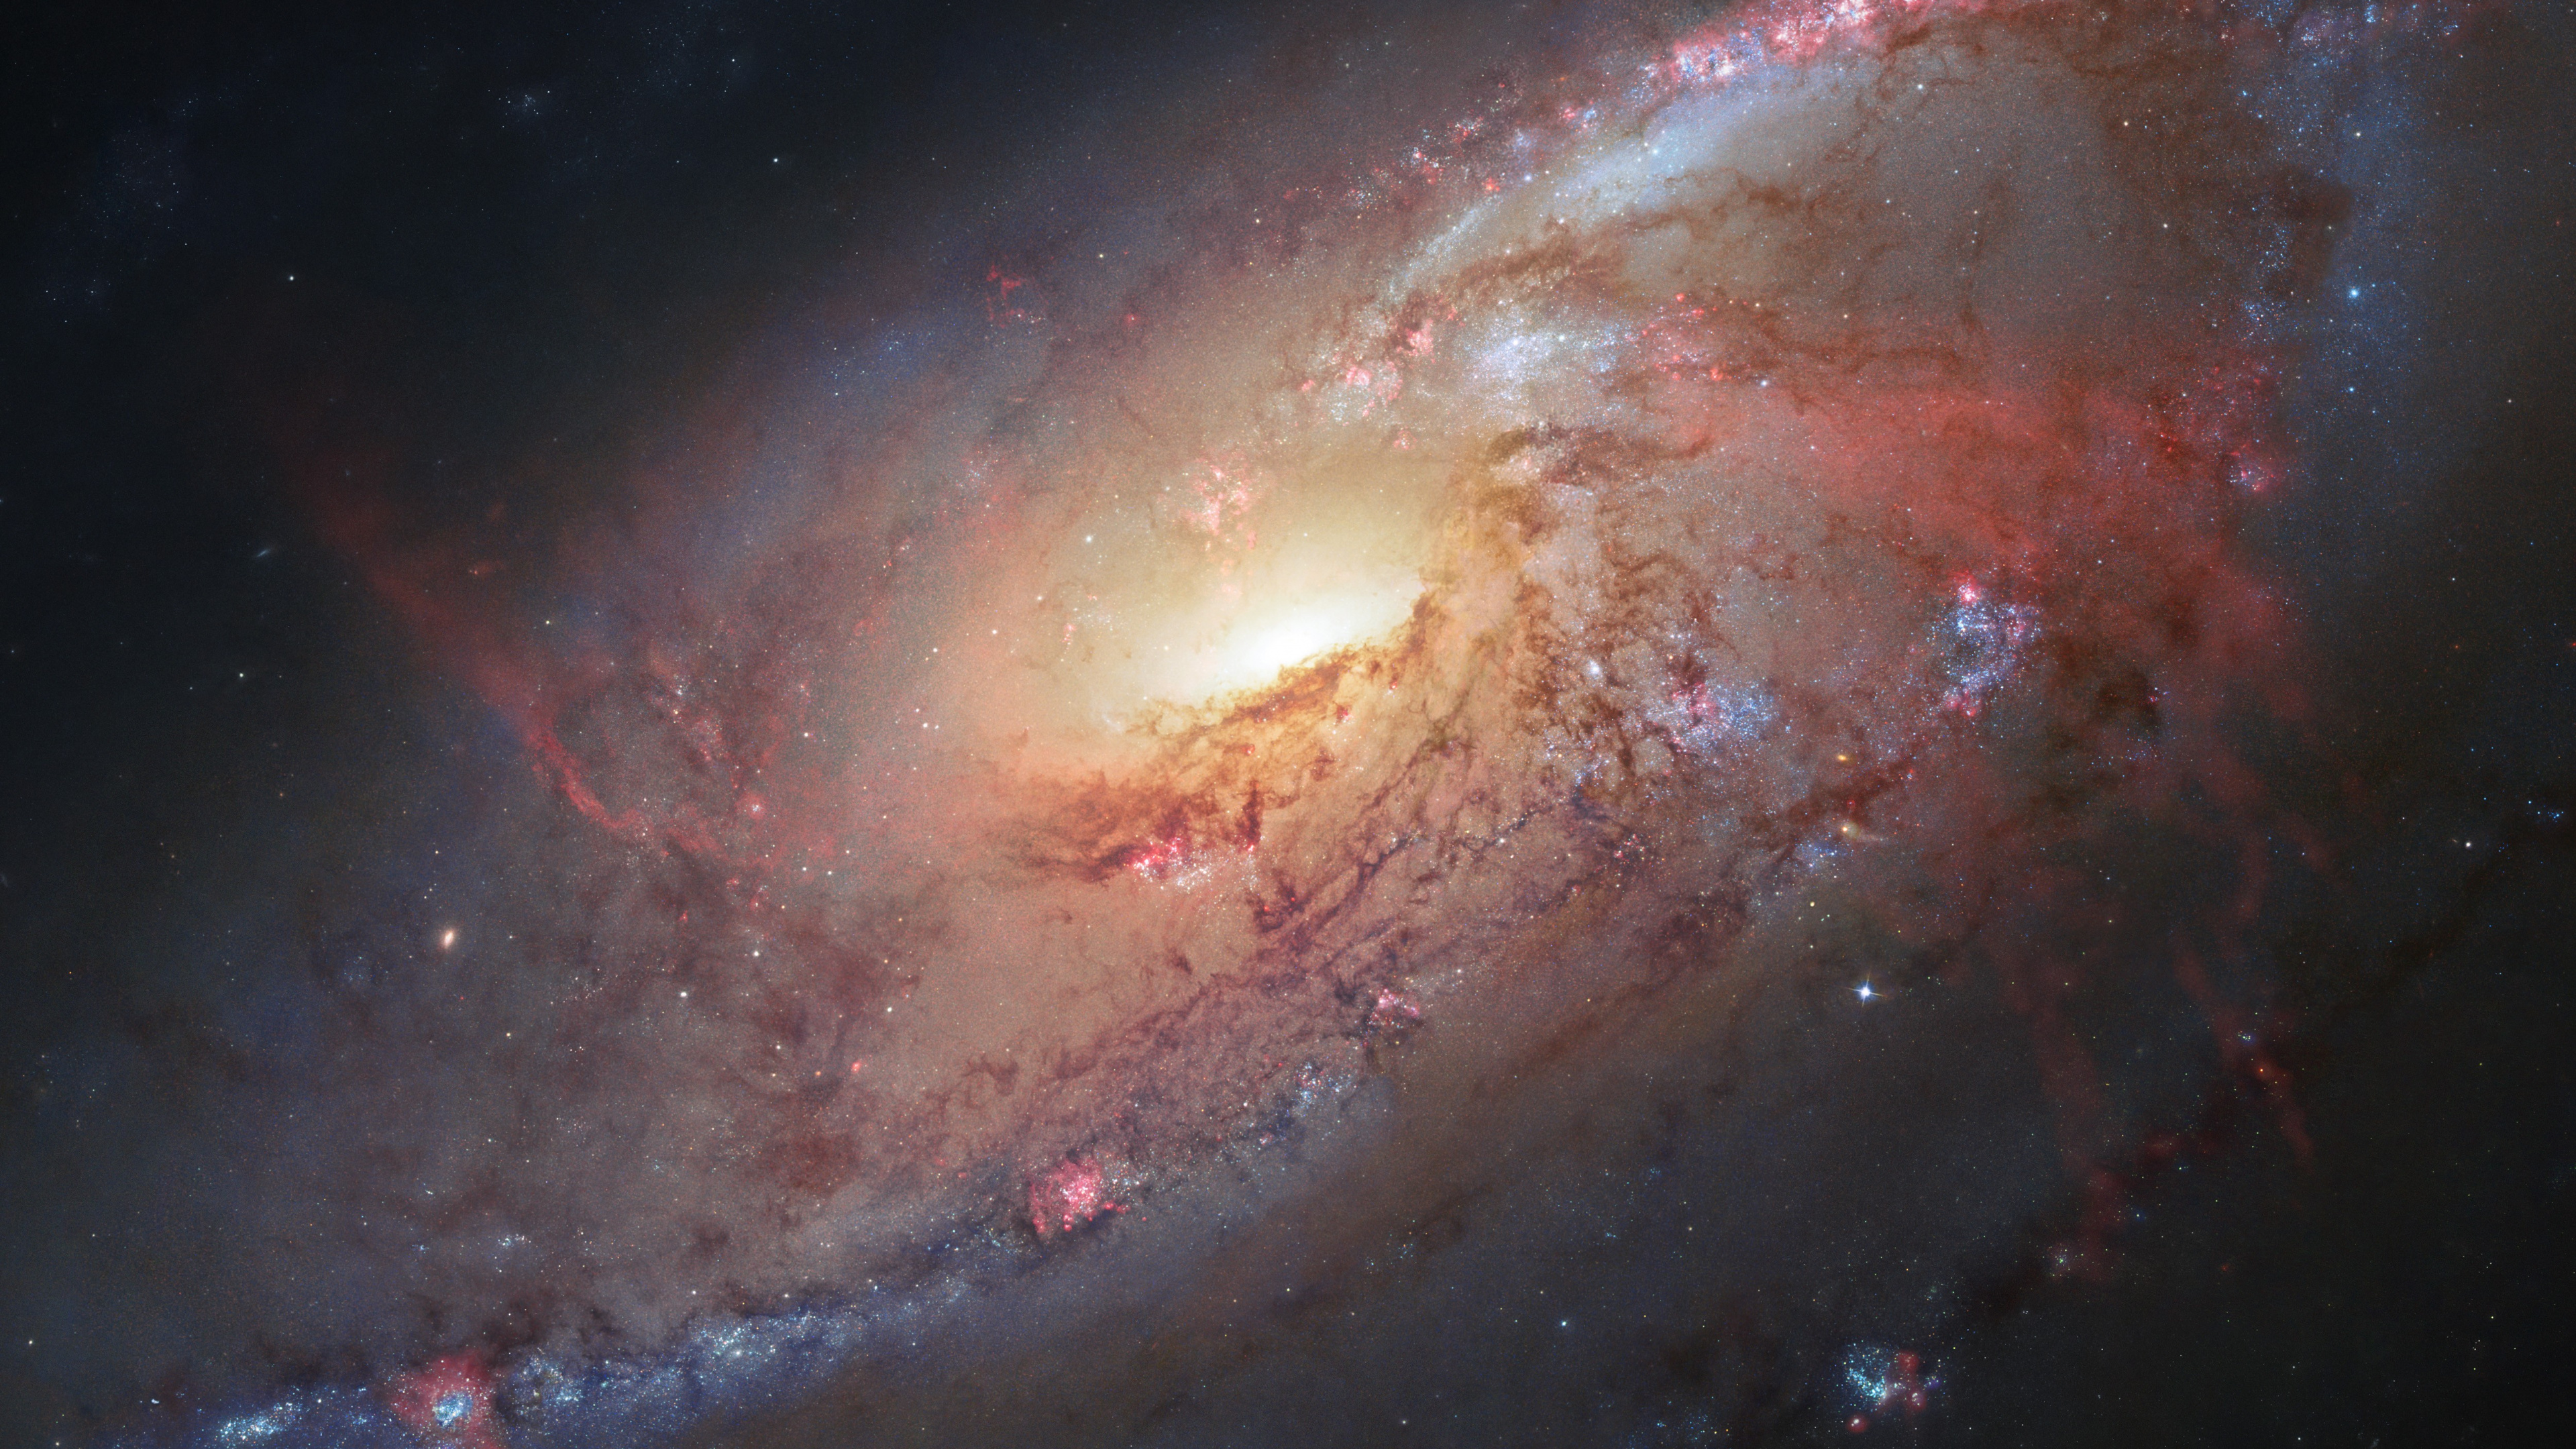 梅西耶 106, 哈勃太空望远镜, 螺旋星系, 外层空间, 气氛 壁纸 3840x2160 允许